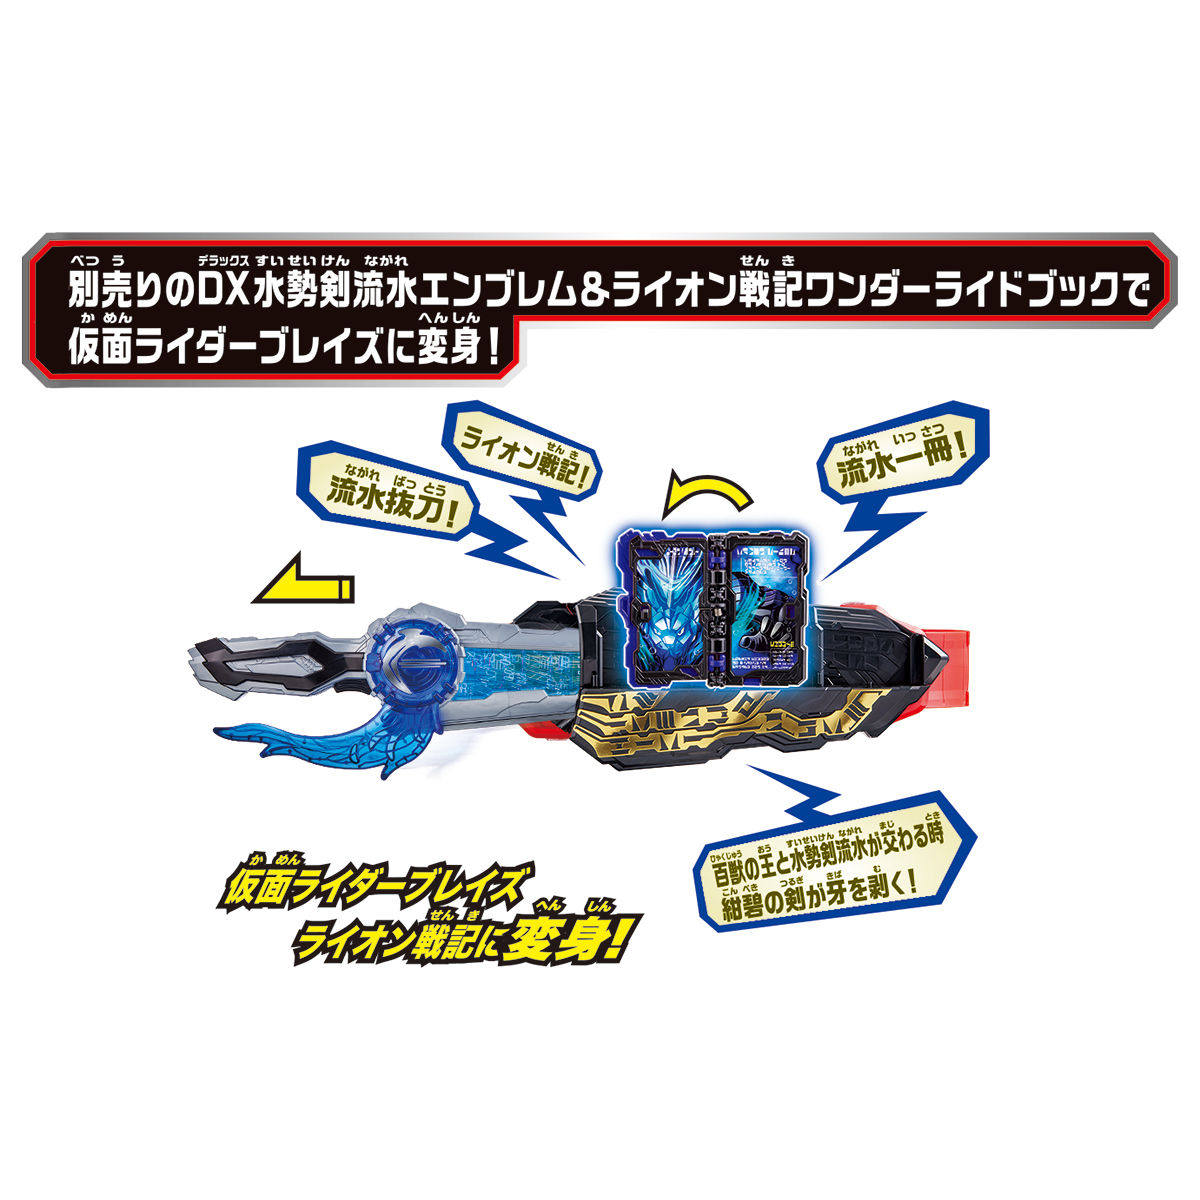 変身ベルト DX聖剣ソードライバー｜仮面ライダーおもちゃウェブ 